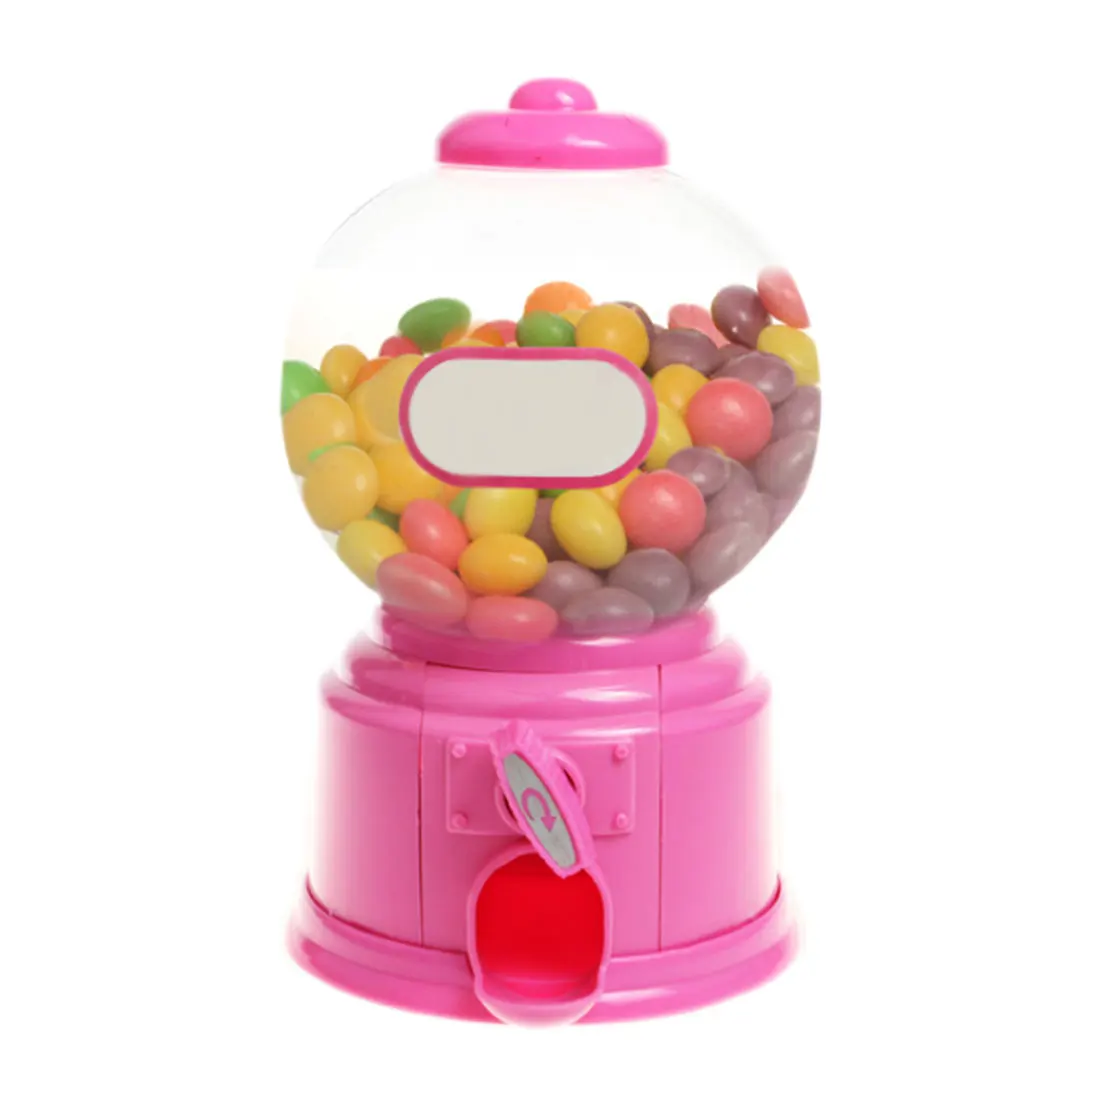 Мини конфеты машина пузырьковый аппарат для продажи жевательных резинок-шариков монета банк детские игрушки складская цена Рождественский подарок на день рождения - Цвет: Розовый